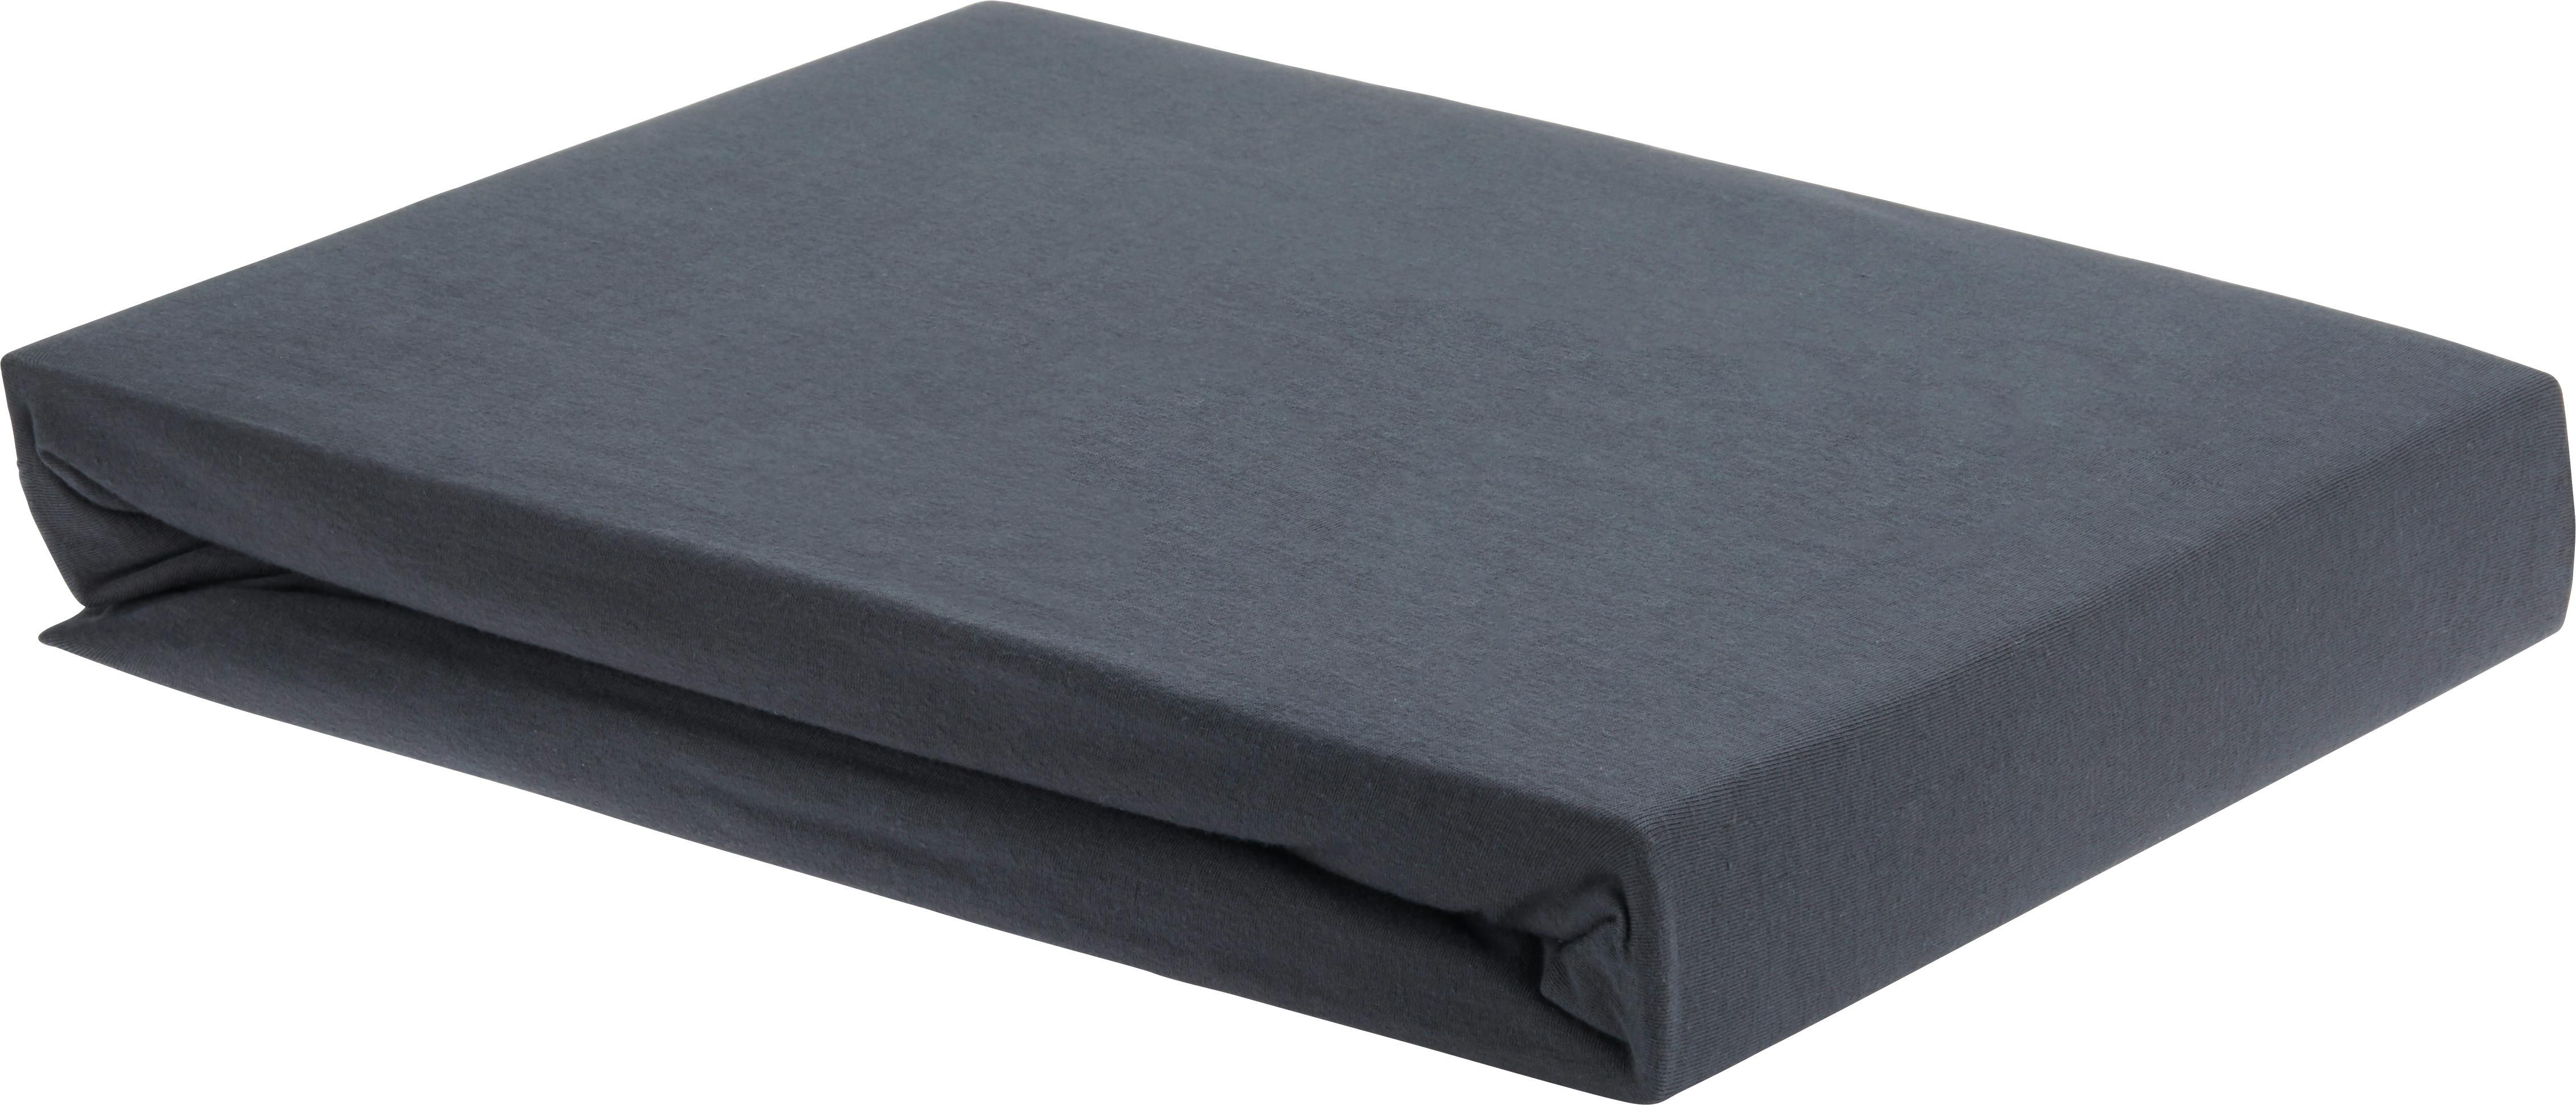 Cearșaf cu elastic Elasthan - antracit, textil (160/200/15cm) - Premium Living